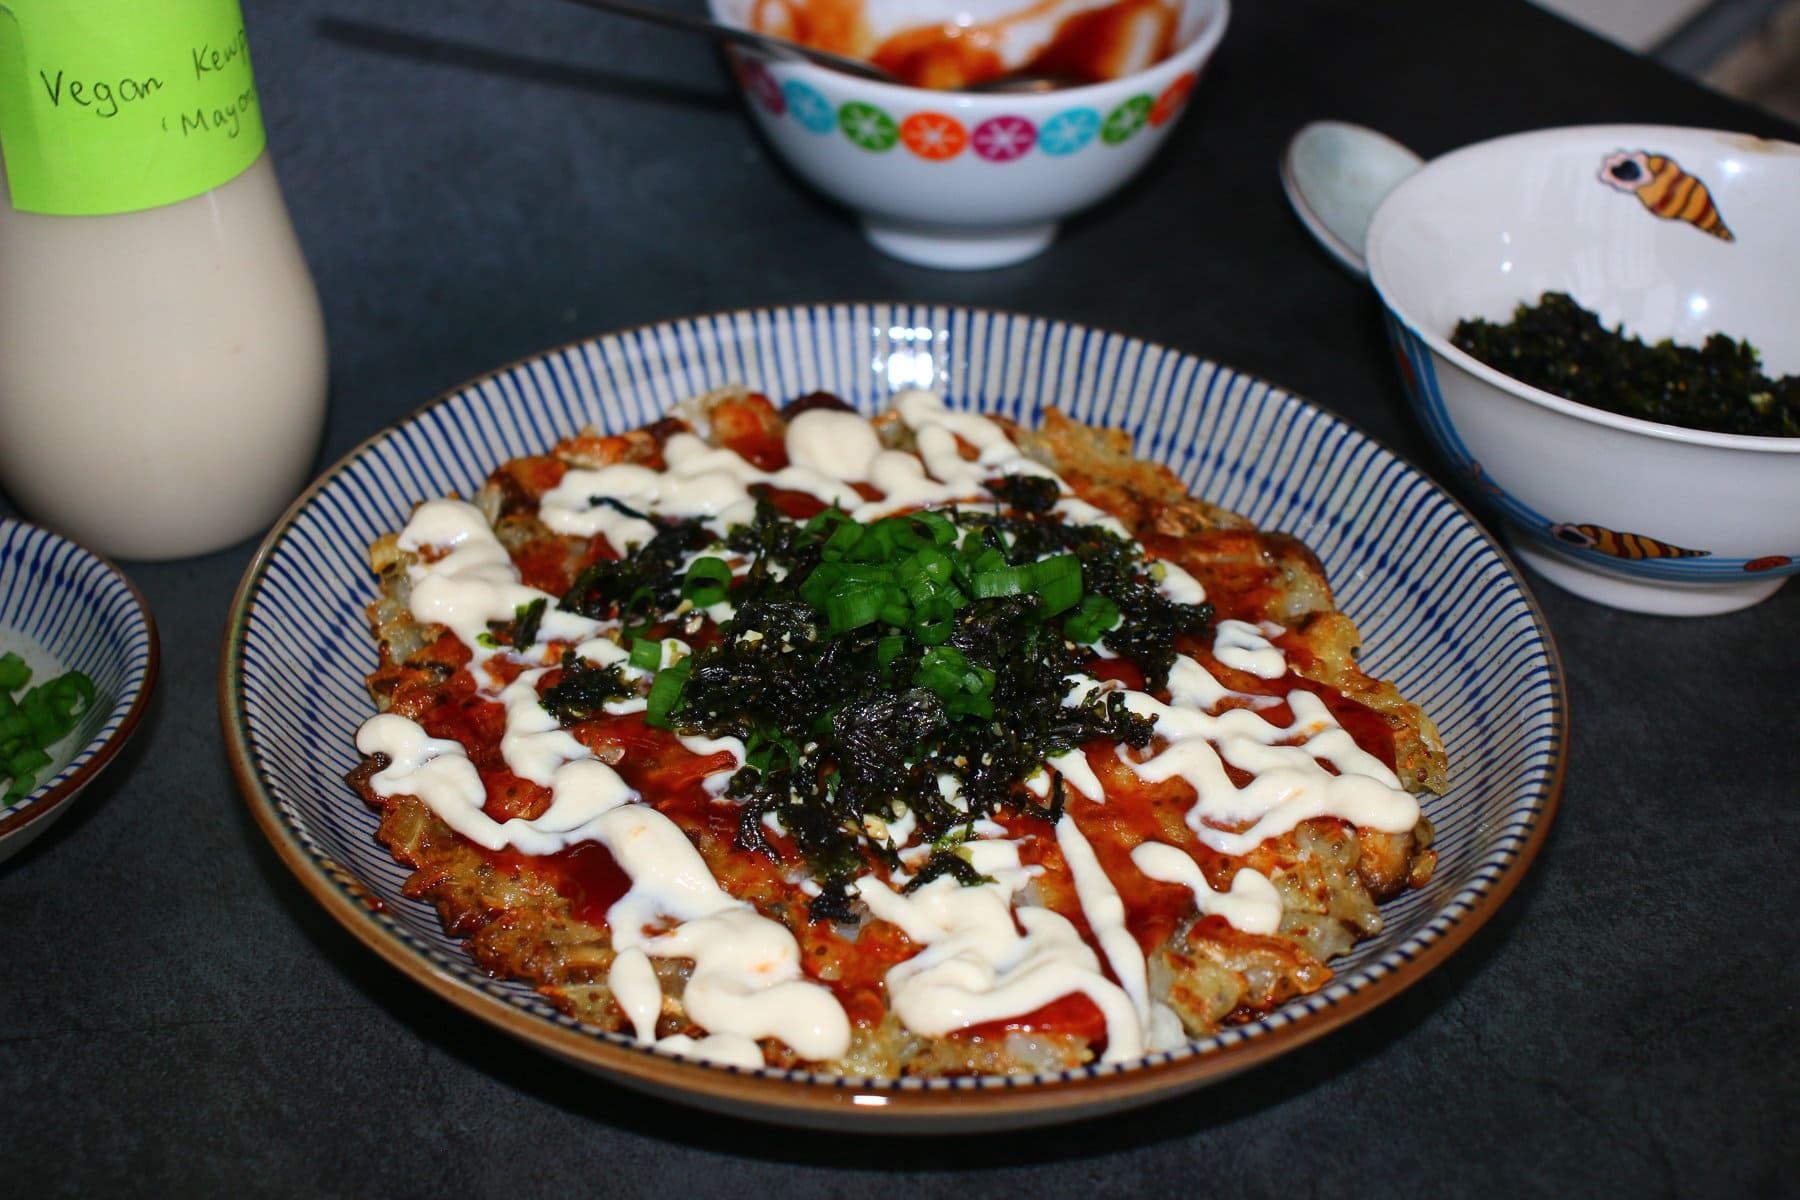 Assemble the vegan okonomiyaki